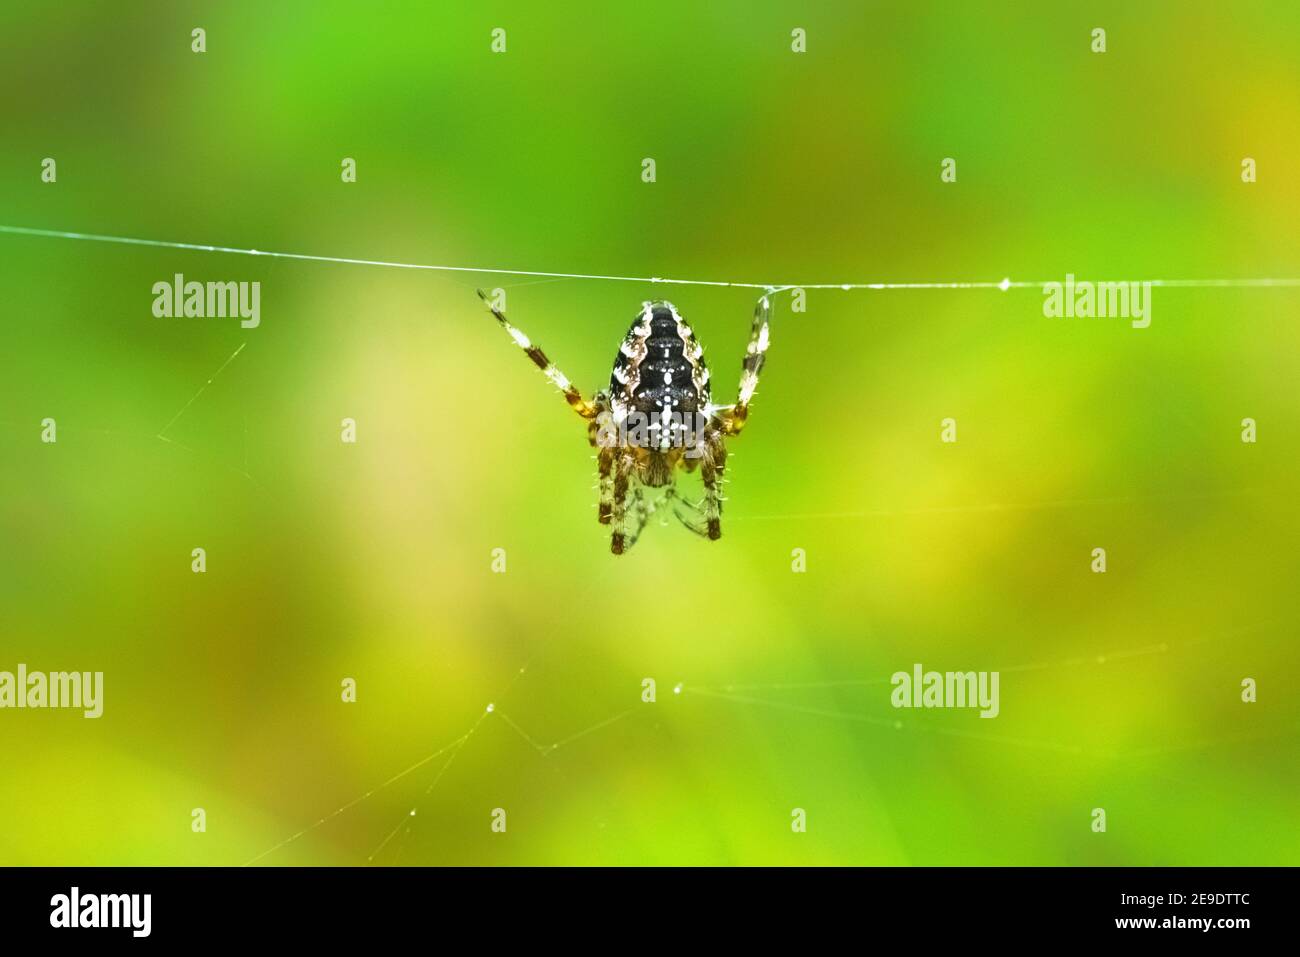 Europäische Gartenspinne, die an einem Webdraht hängt. Araneus diadematus mit Kreuz auf dem Rücken in einem Spinnennetz. Gruseliger Spinner auf einem verschwommenen grünen Hintergrund Stockfoto